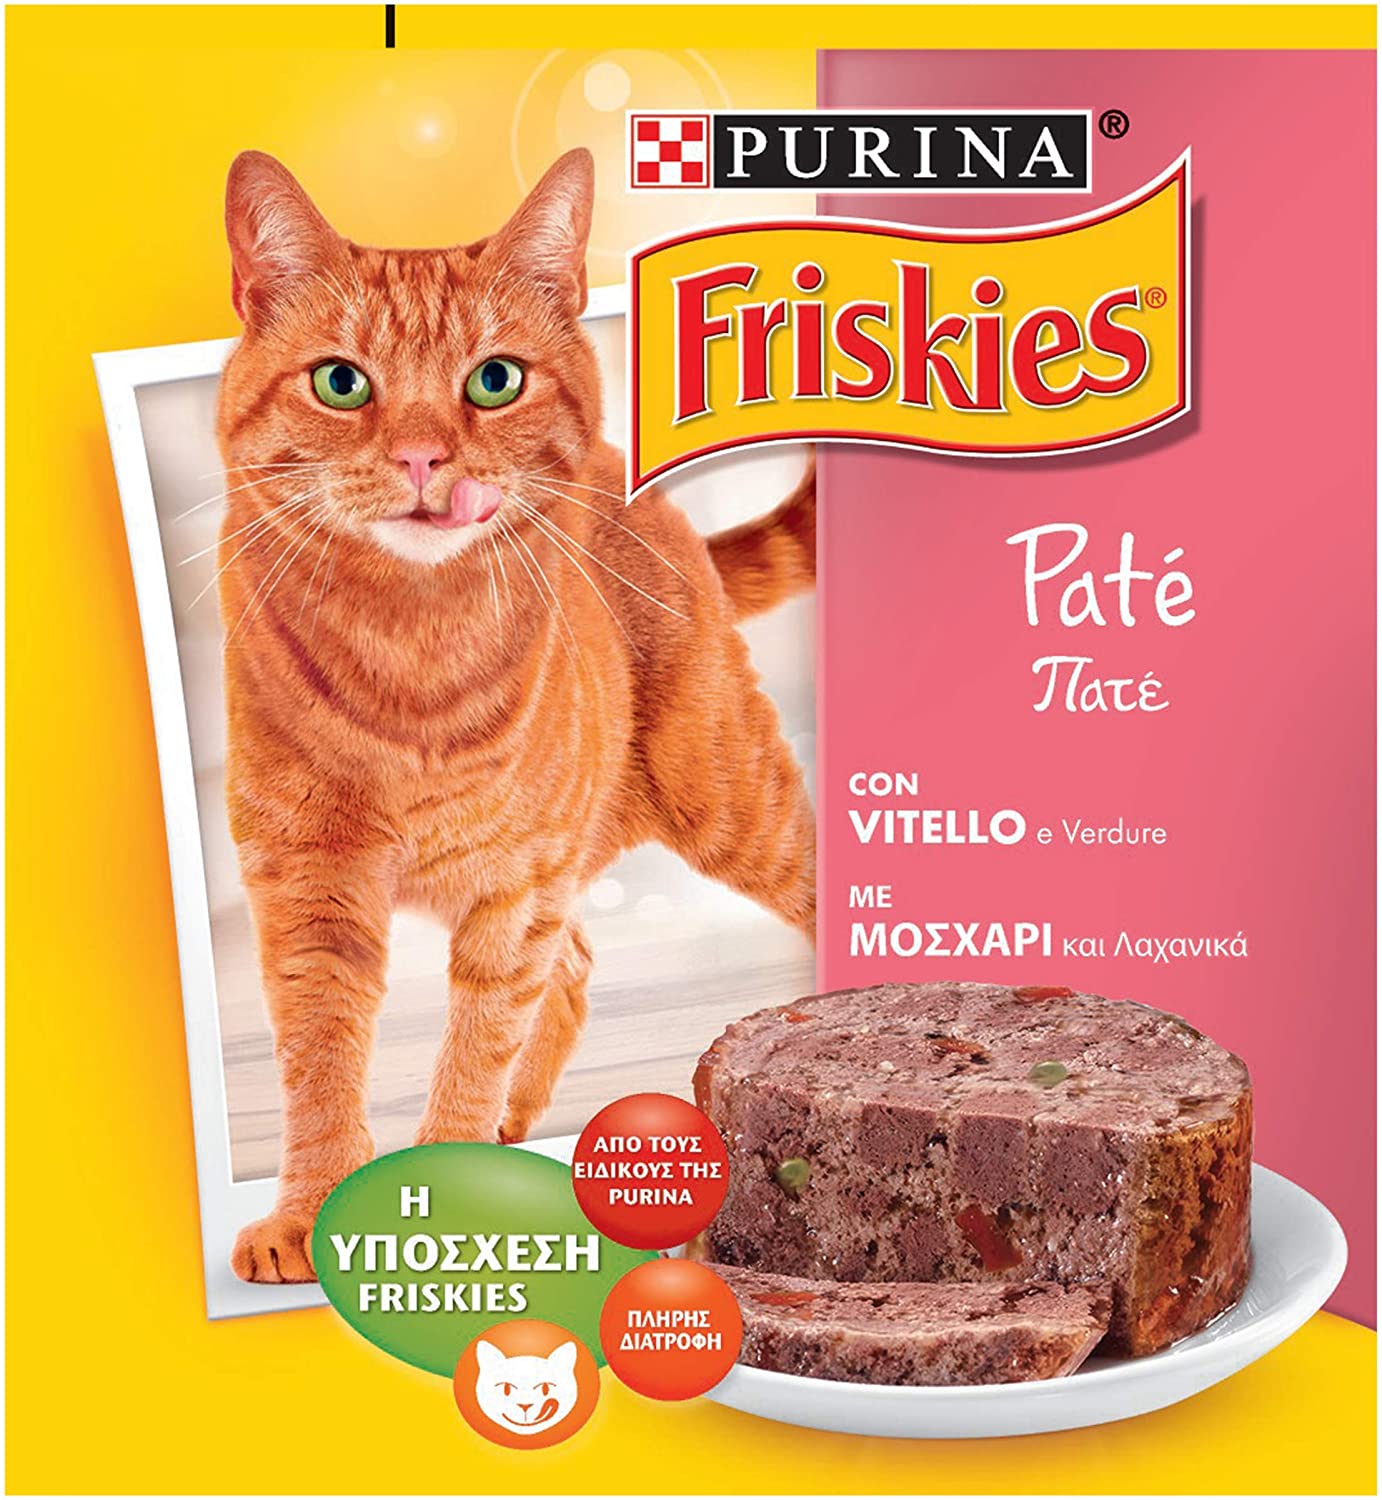  Friskies fuagrás para el Gato, con Ternero y Verduras, 400 g – Paquete de 24 Piezas 